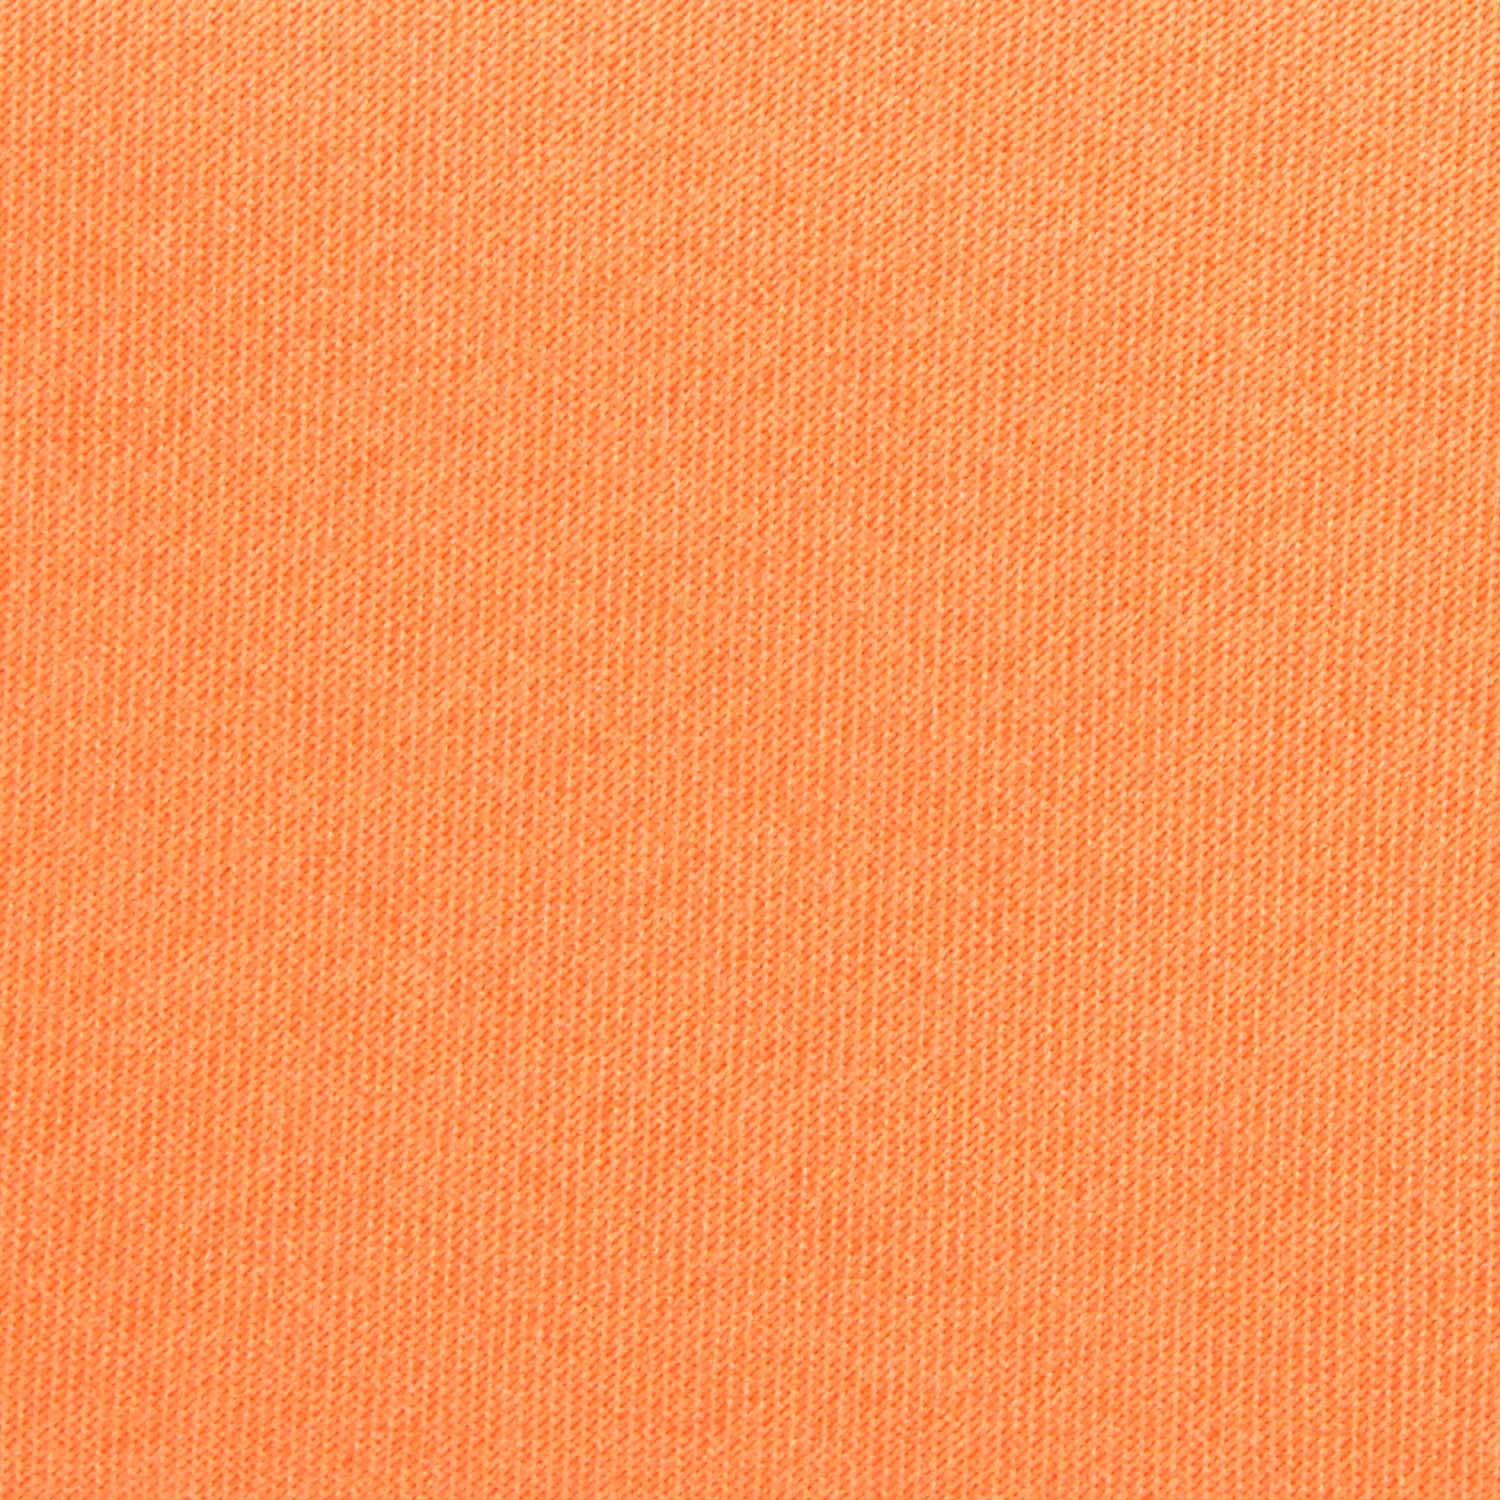 Orange Tangerine Satin Fabric Self Tie Diamond Tip Bow Tie M143